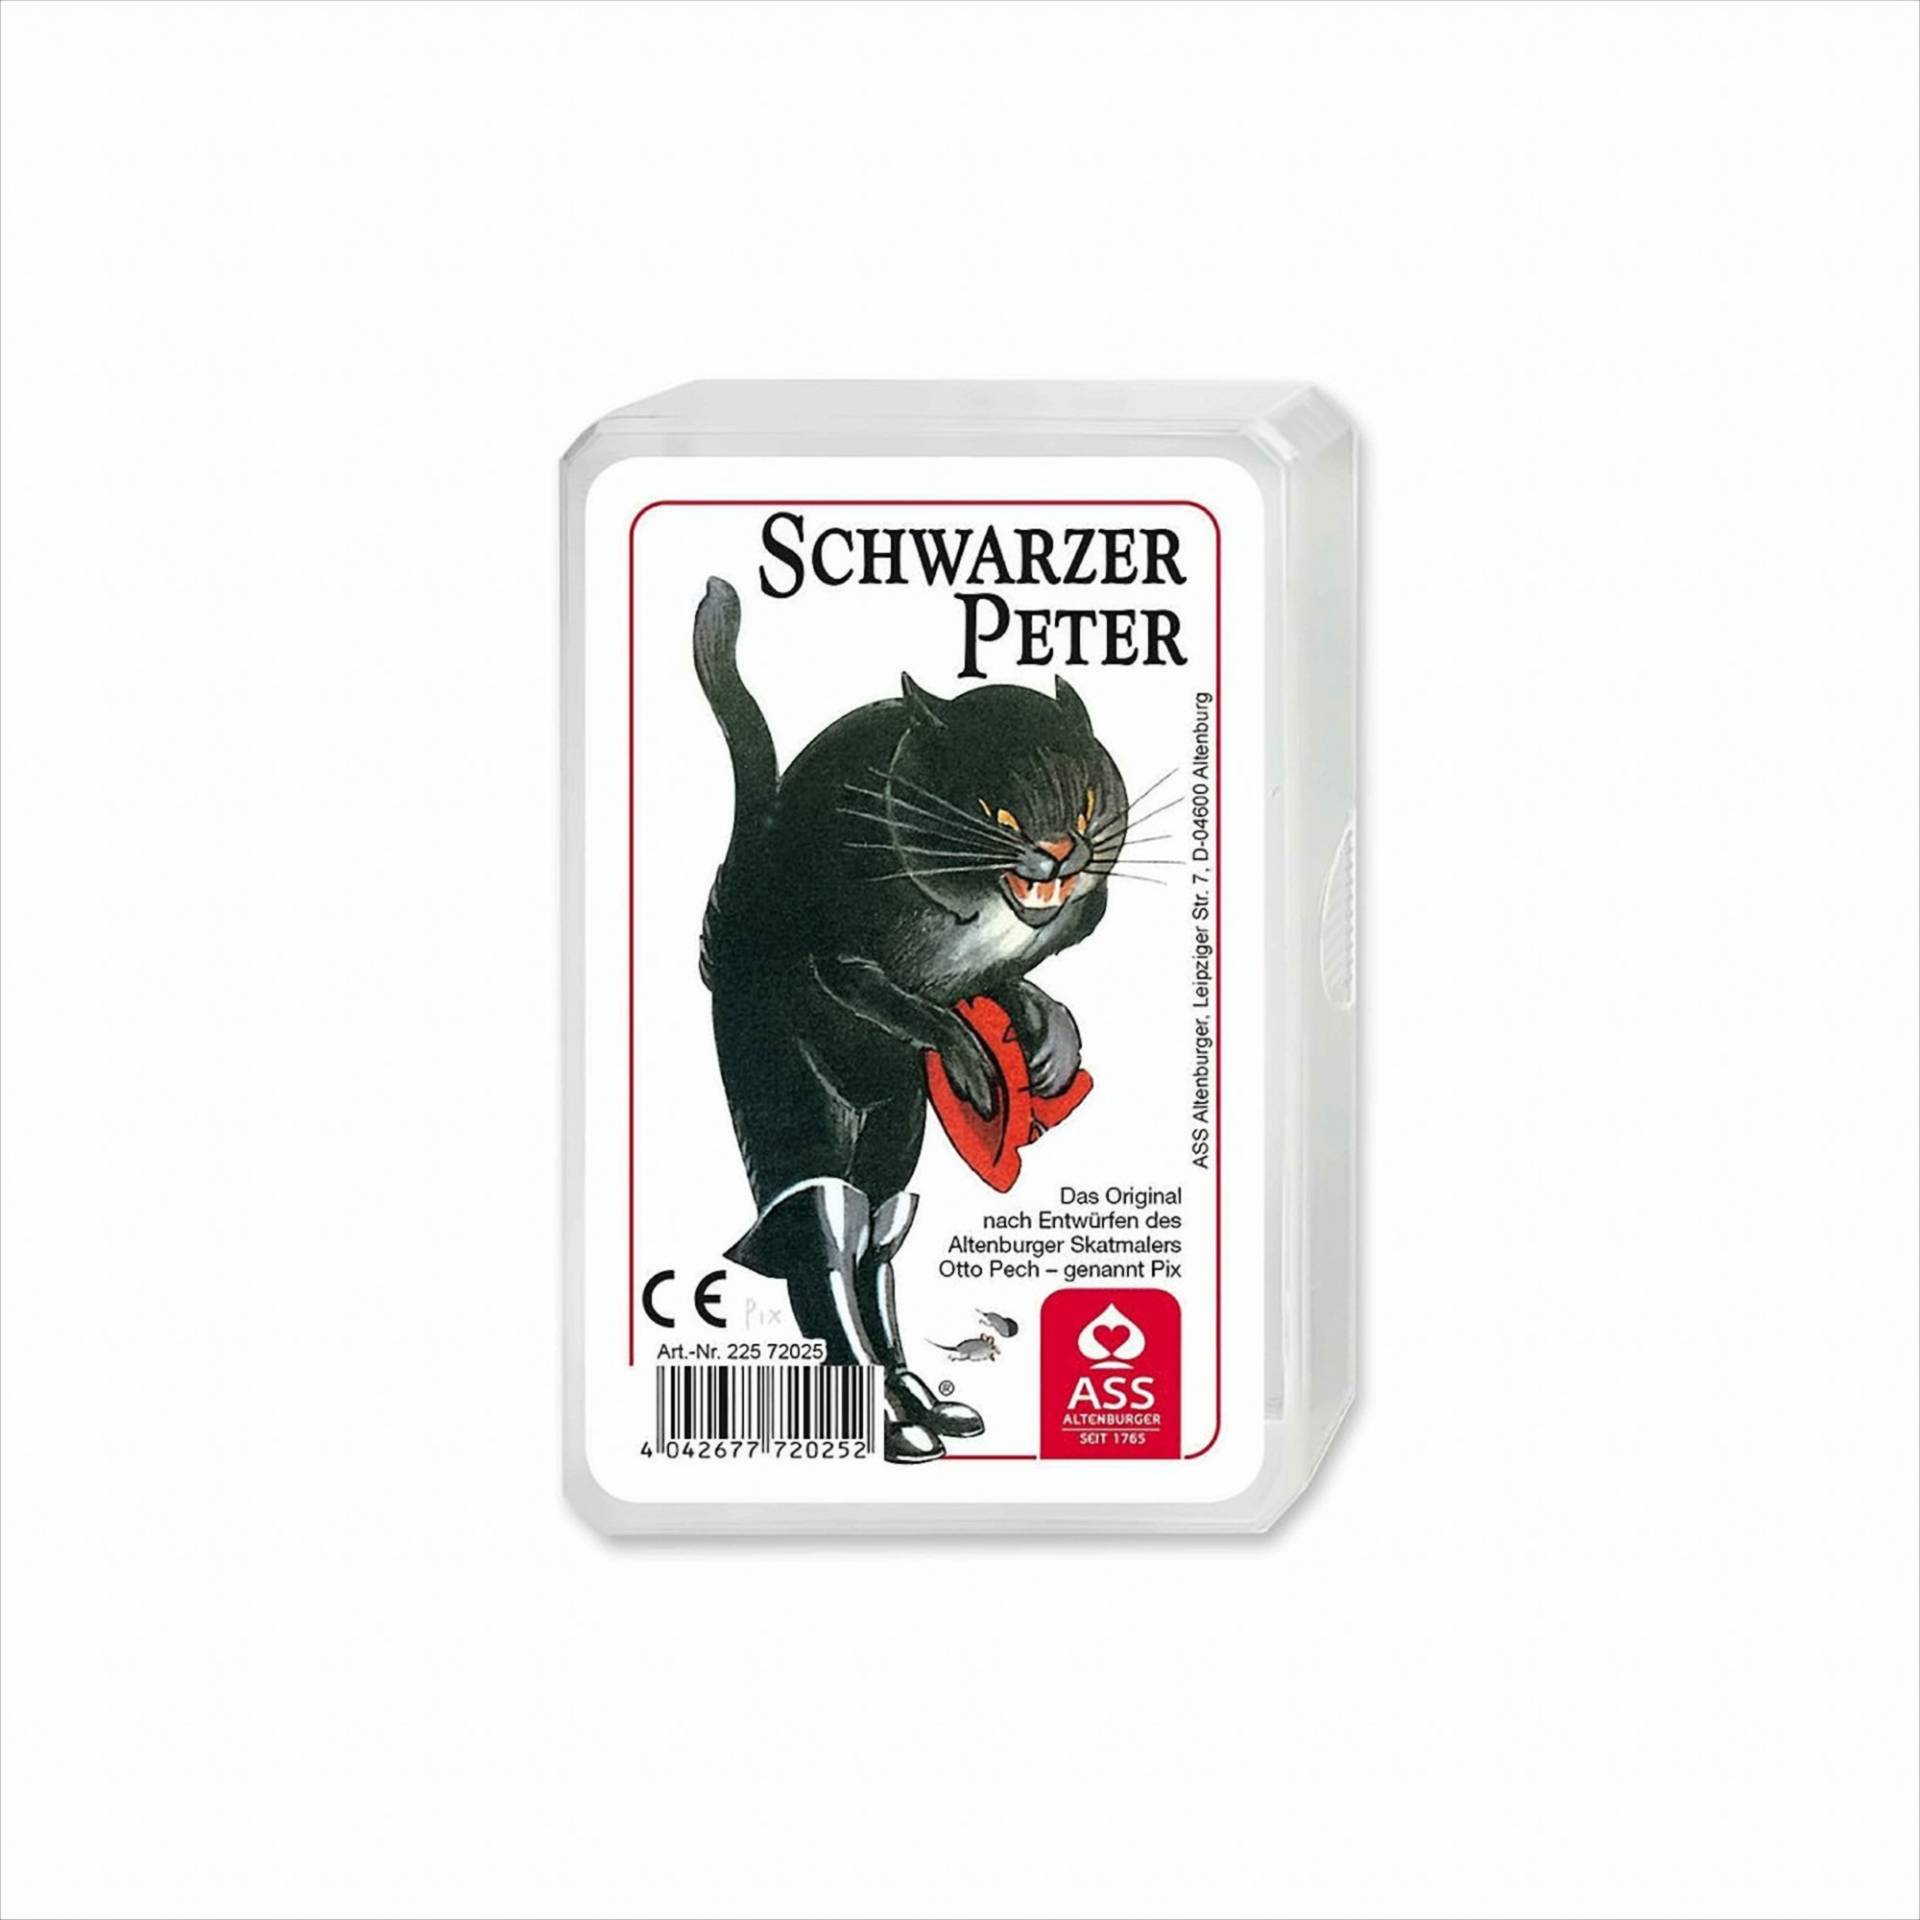 Original Schwarzer Peter von ASS Spielkartenfabrik